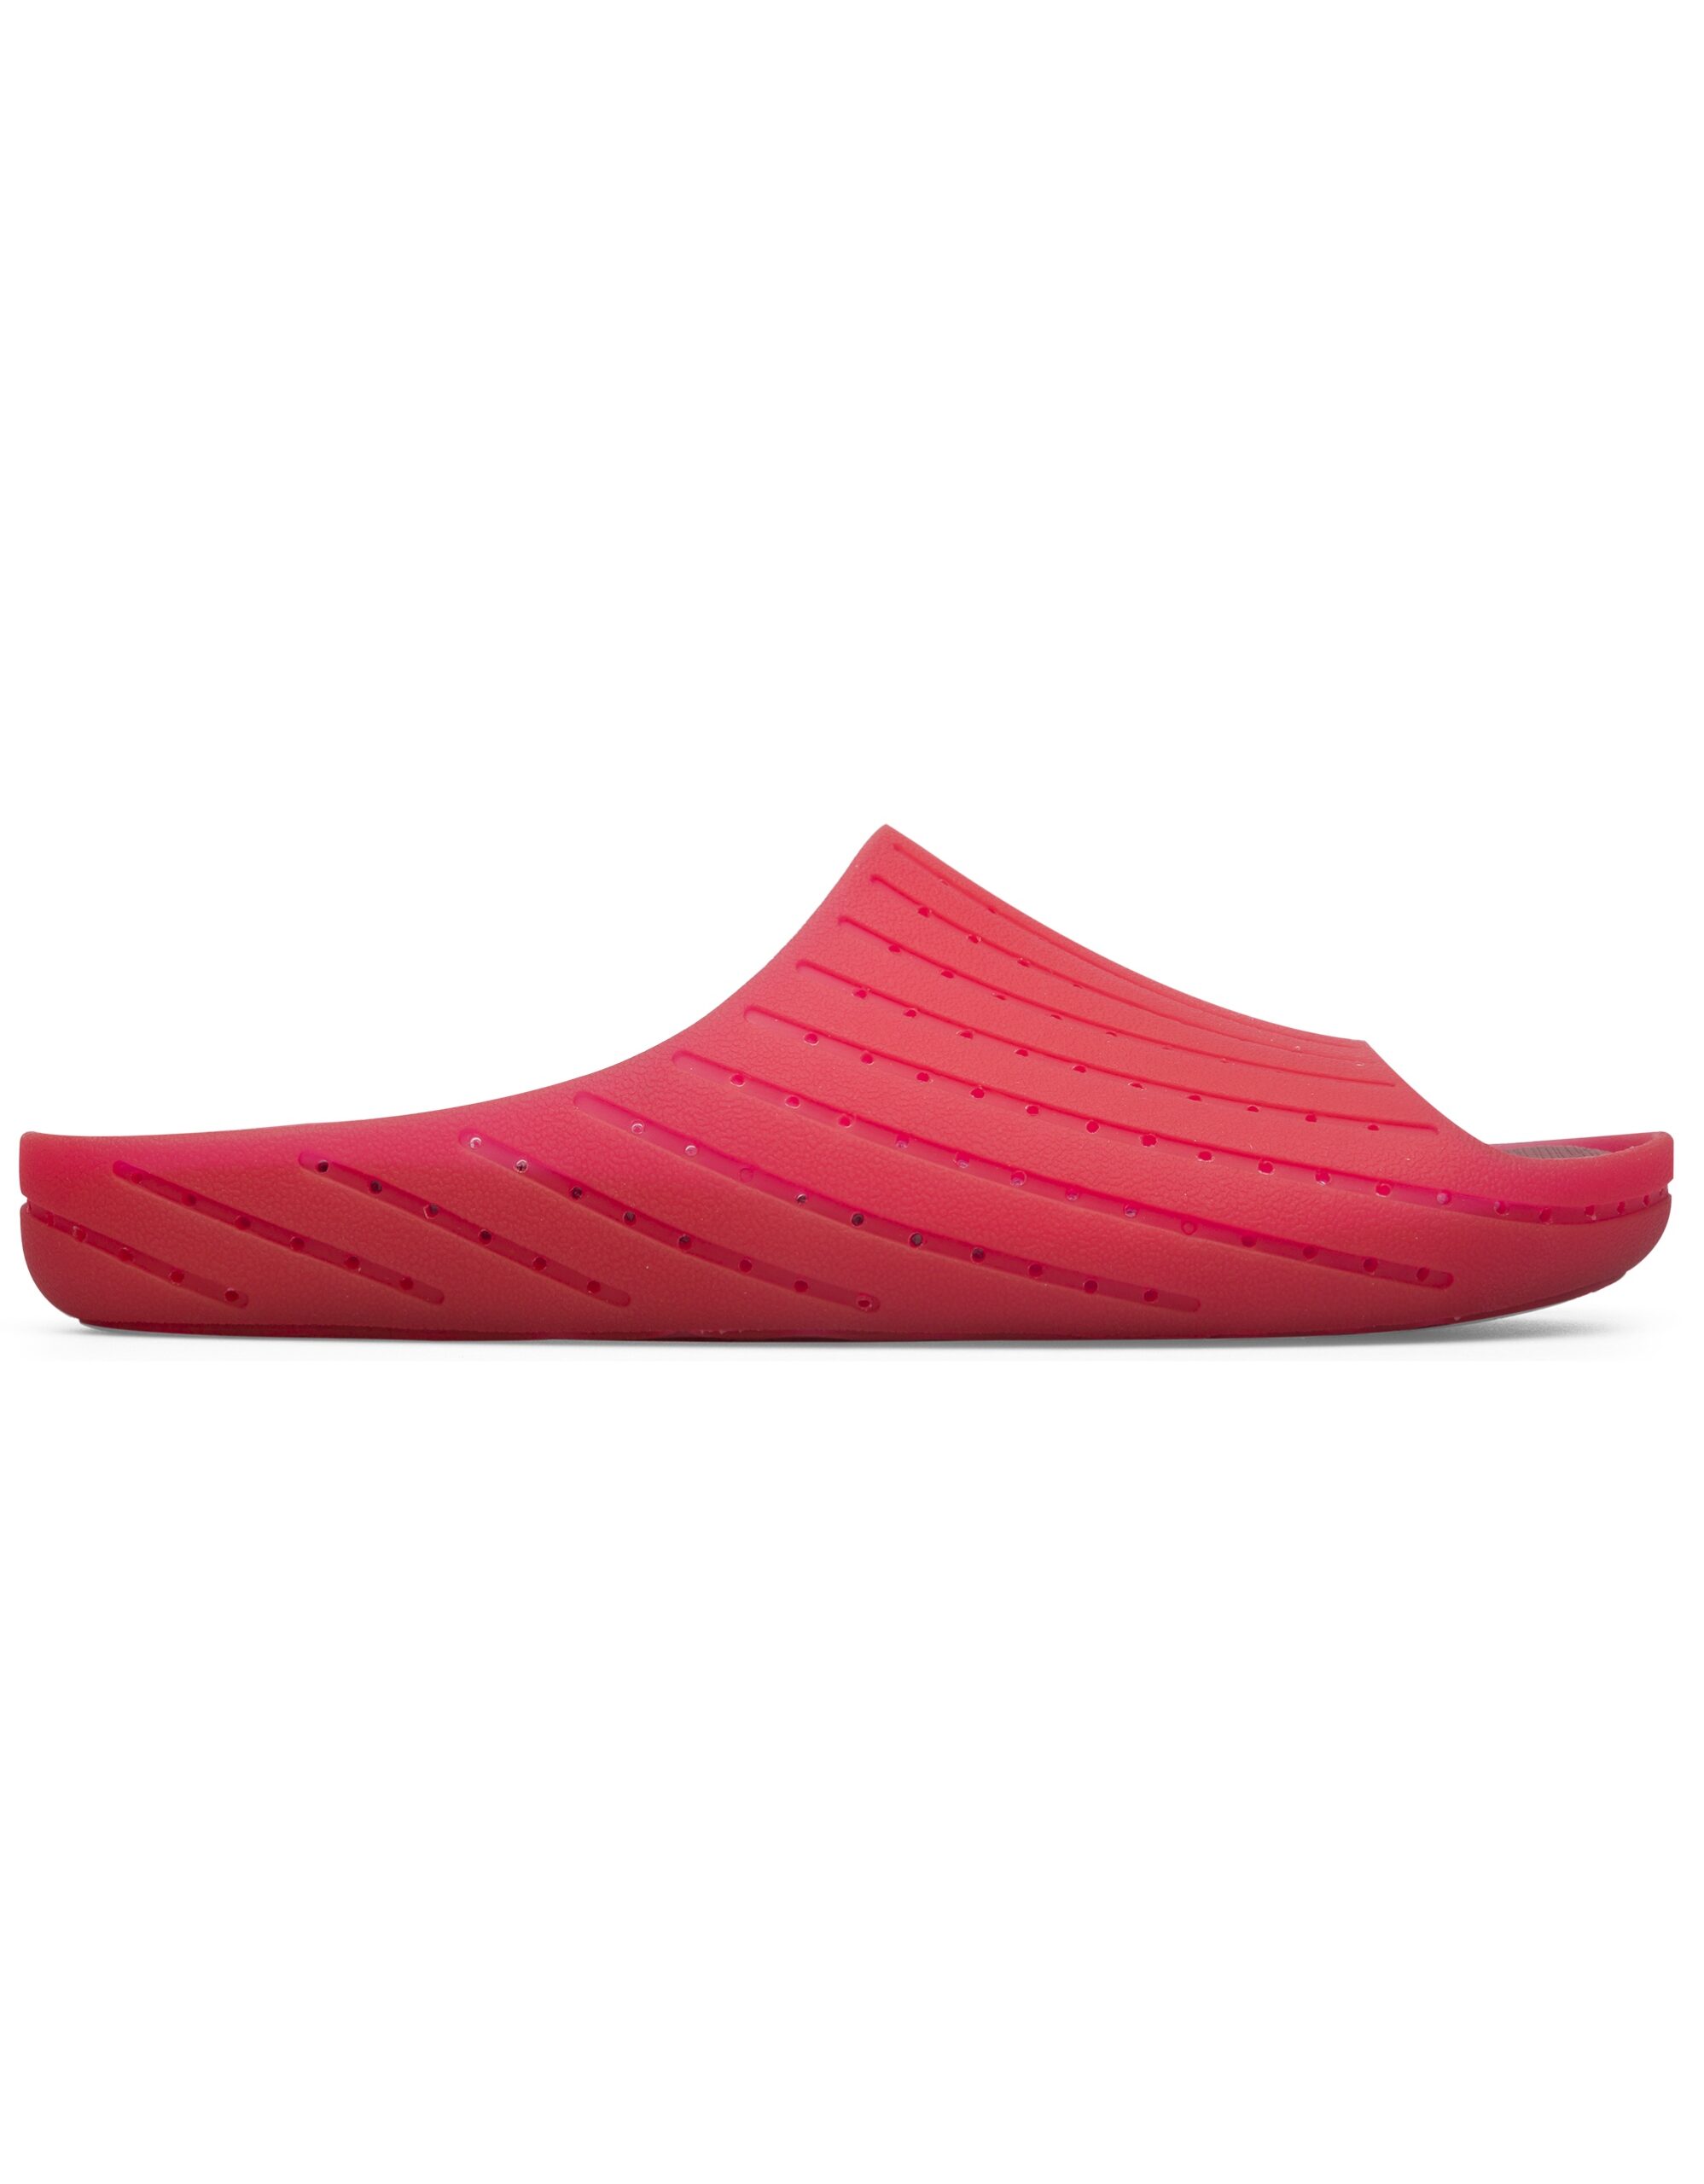 als resultaat Bron Schuldenaar Camper Wabi 18338-027 Sandals for Men | Επίσημο Camper Shoes Online Store